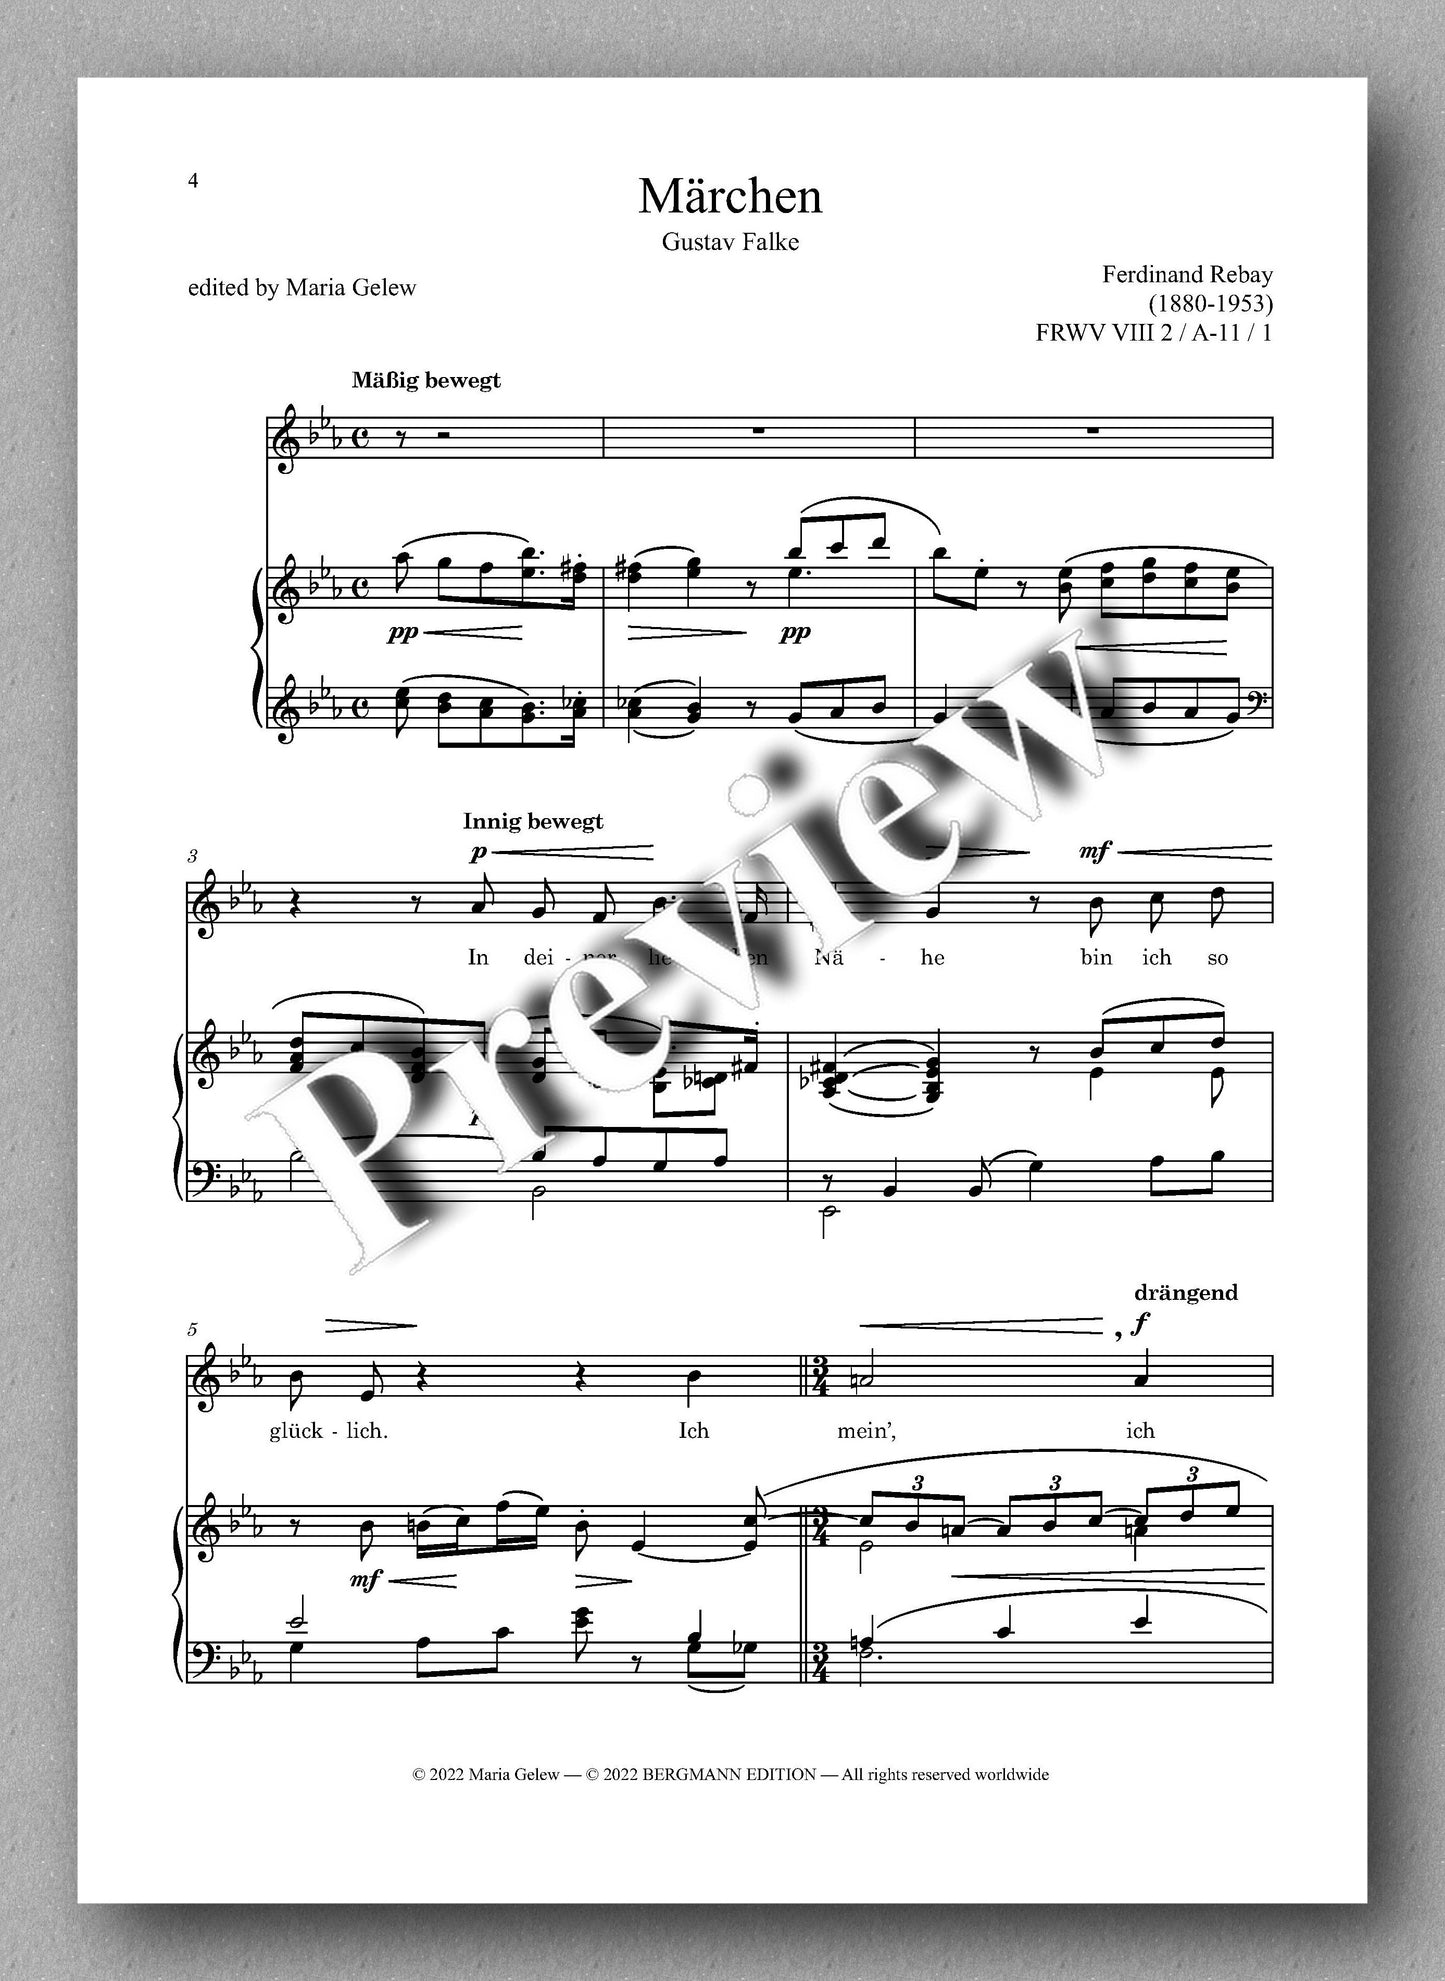 Ferdinand Rebay, Lieder nach Gedichten von Gustav Falke - preview of the music score 1